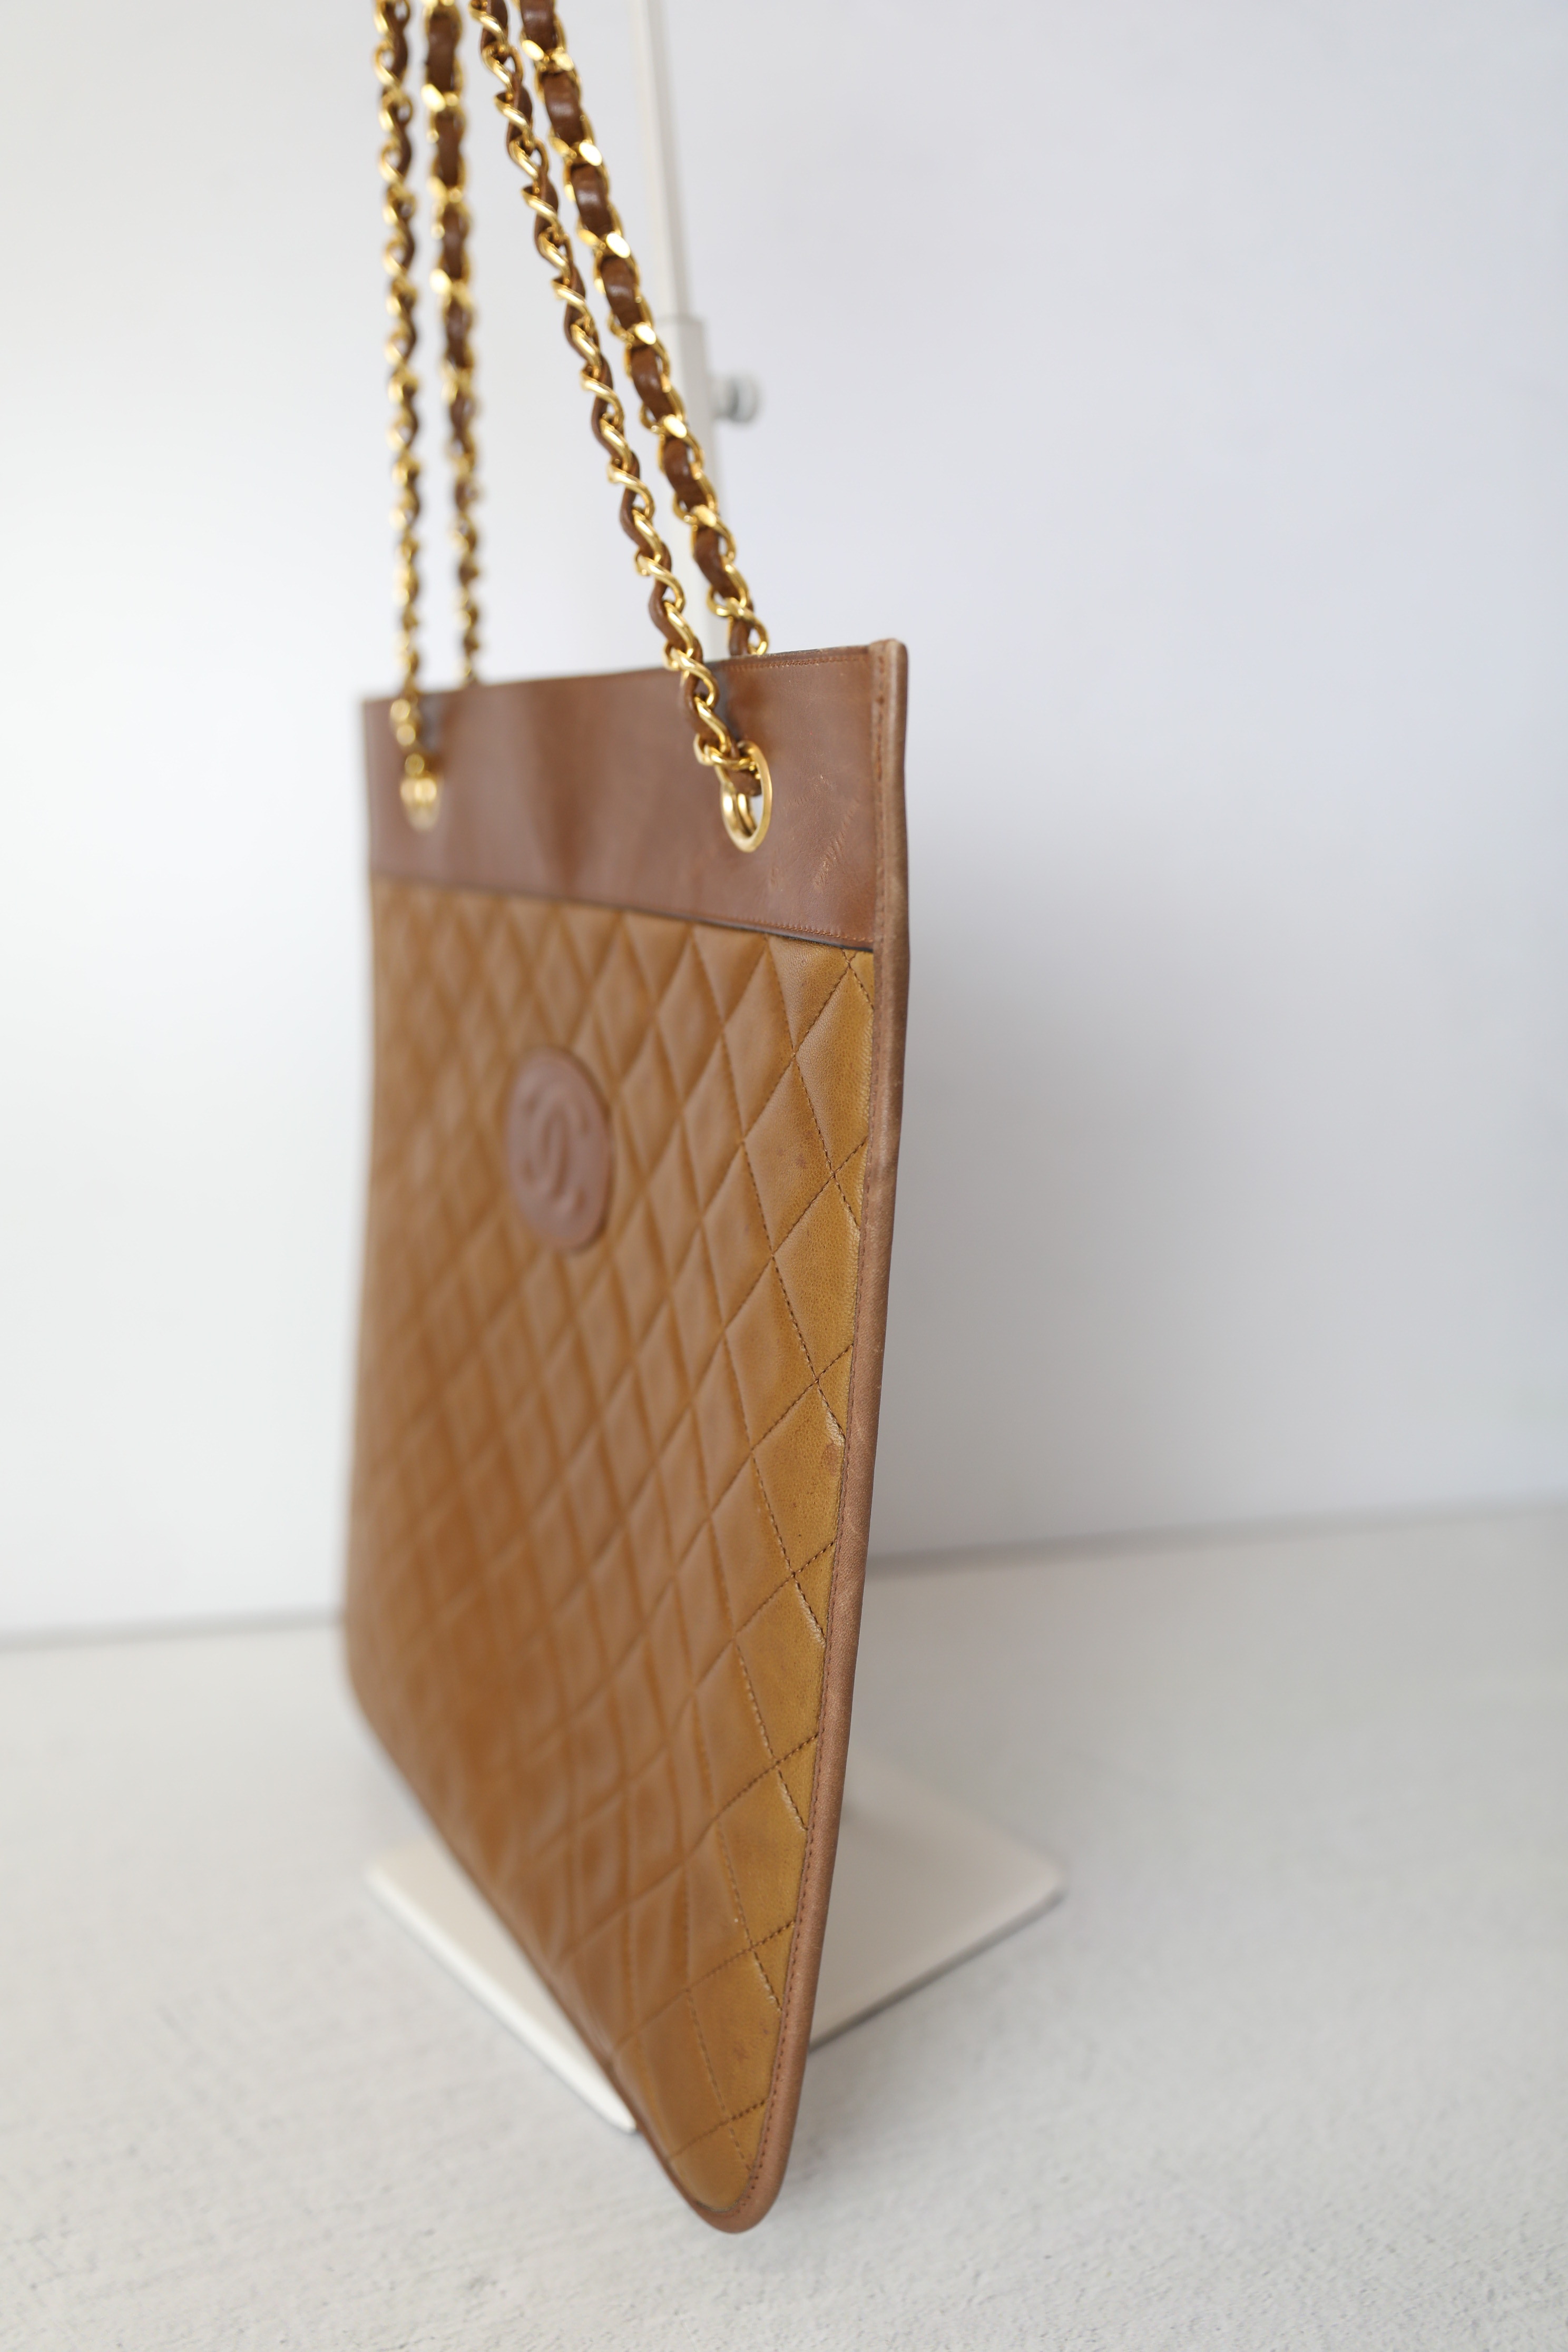 CHANEL Vintage Stitched CC Large Tote Brown Suede Gold Hardware Shoulder Bag  New